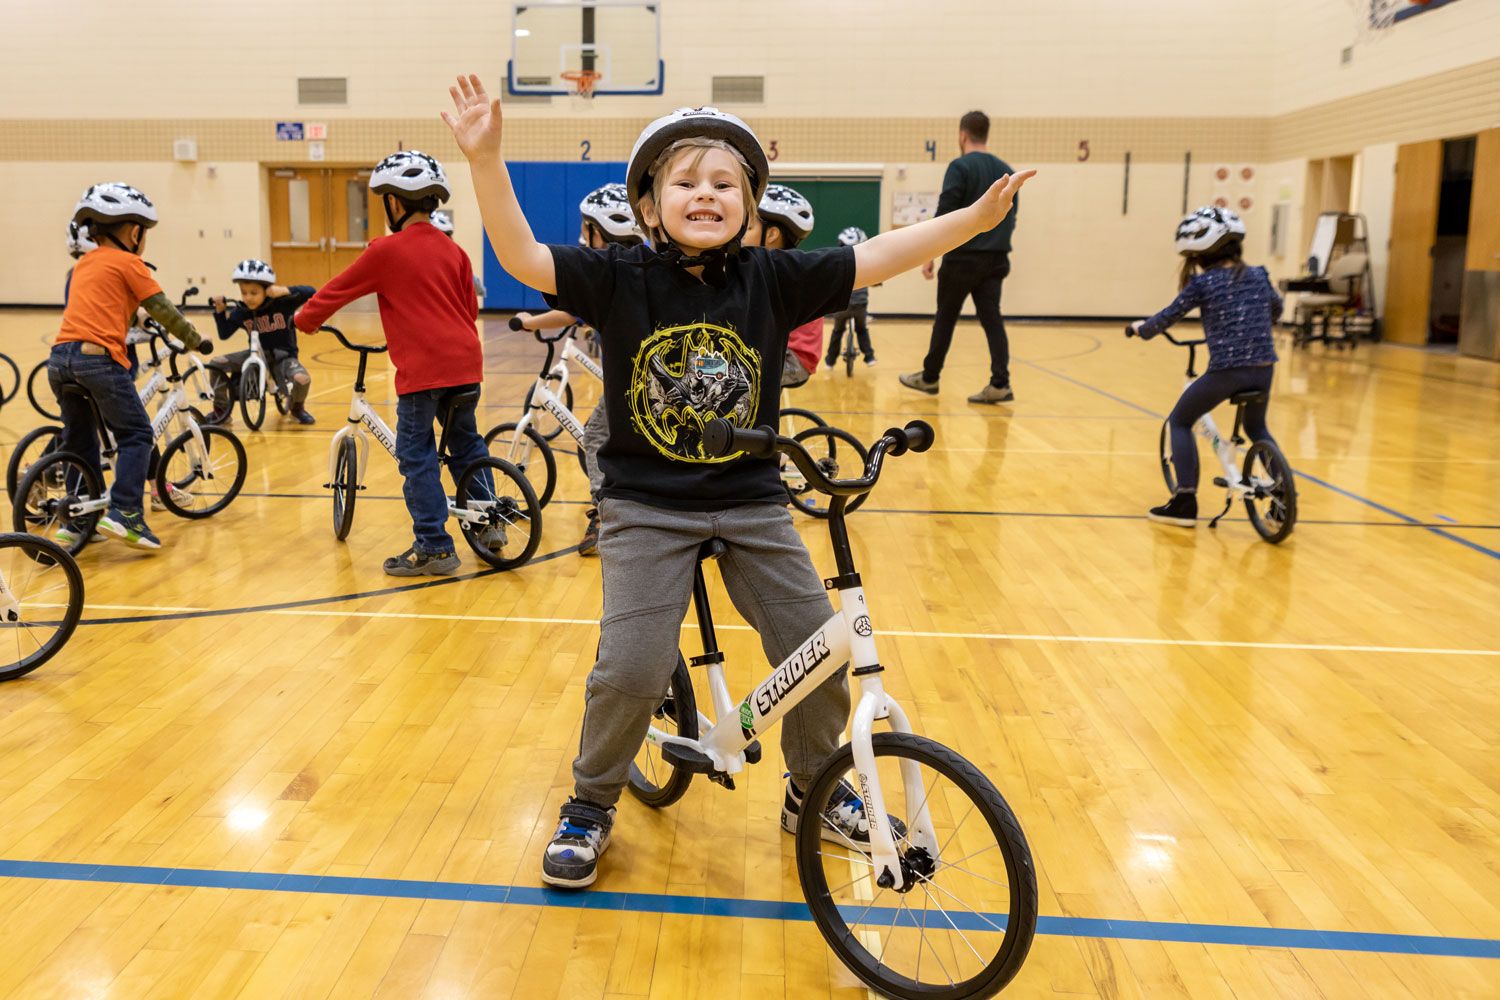 A triumphant child celebrates riding a bike in the All Kids Bike Kindergarten PE Program